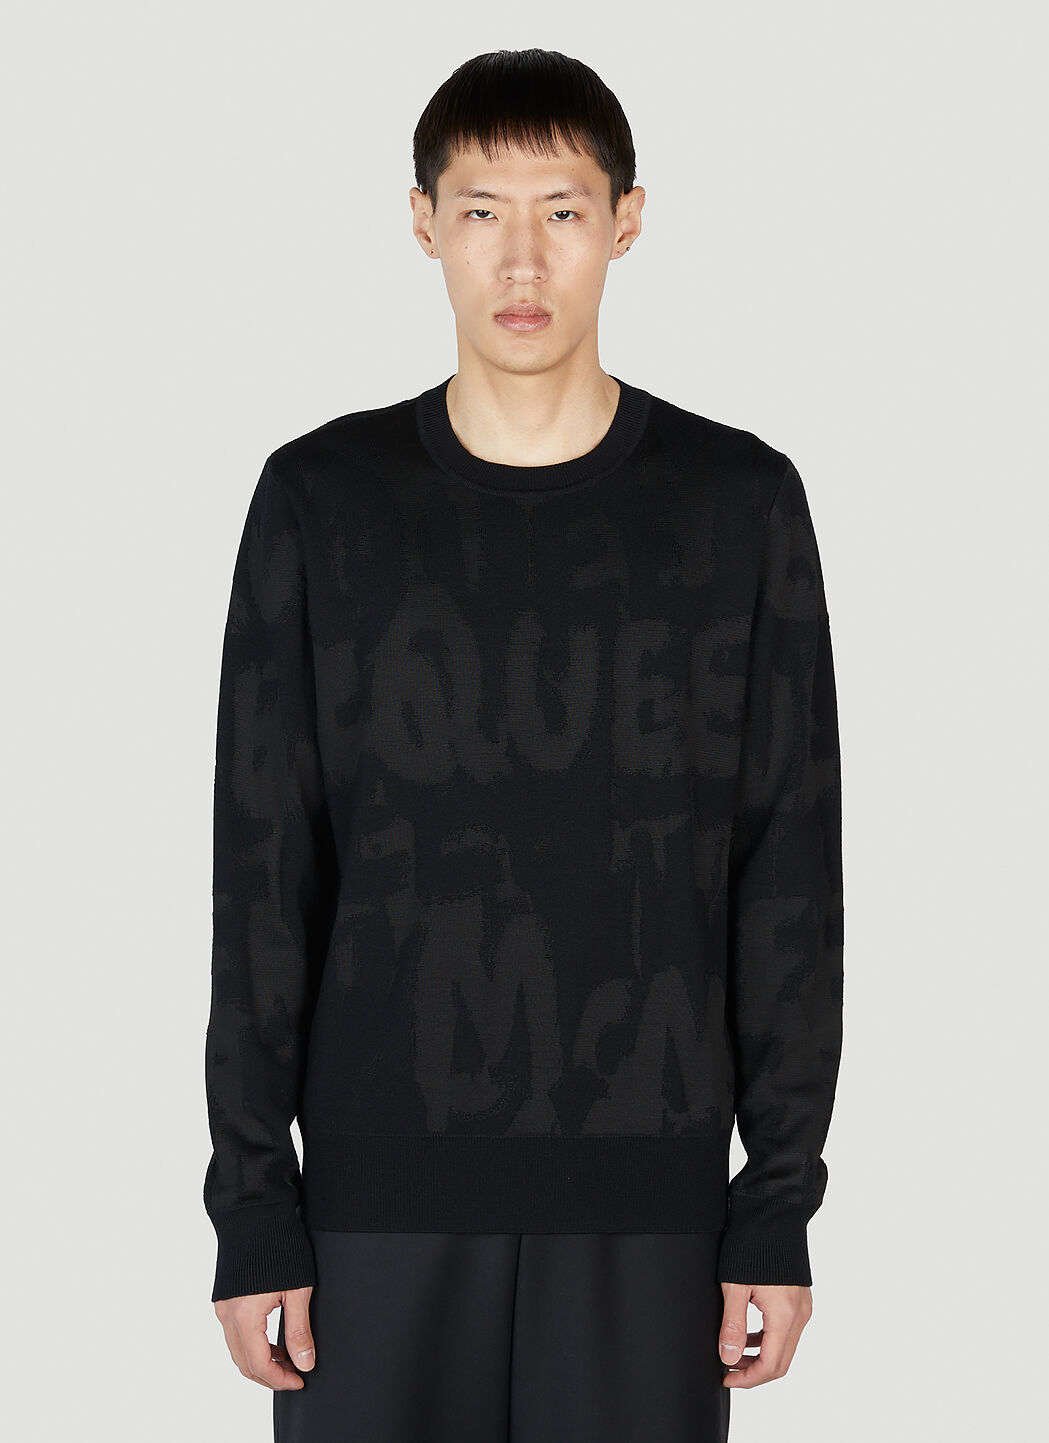 Alexander McQueen 로고 스웨터 블랙 amq0152002